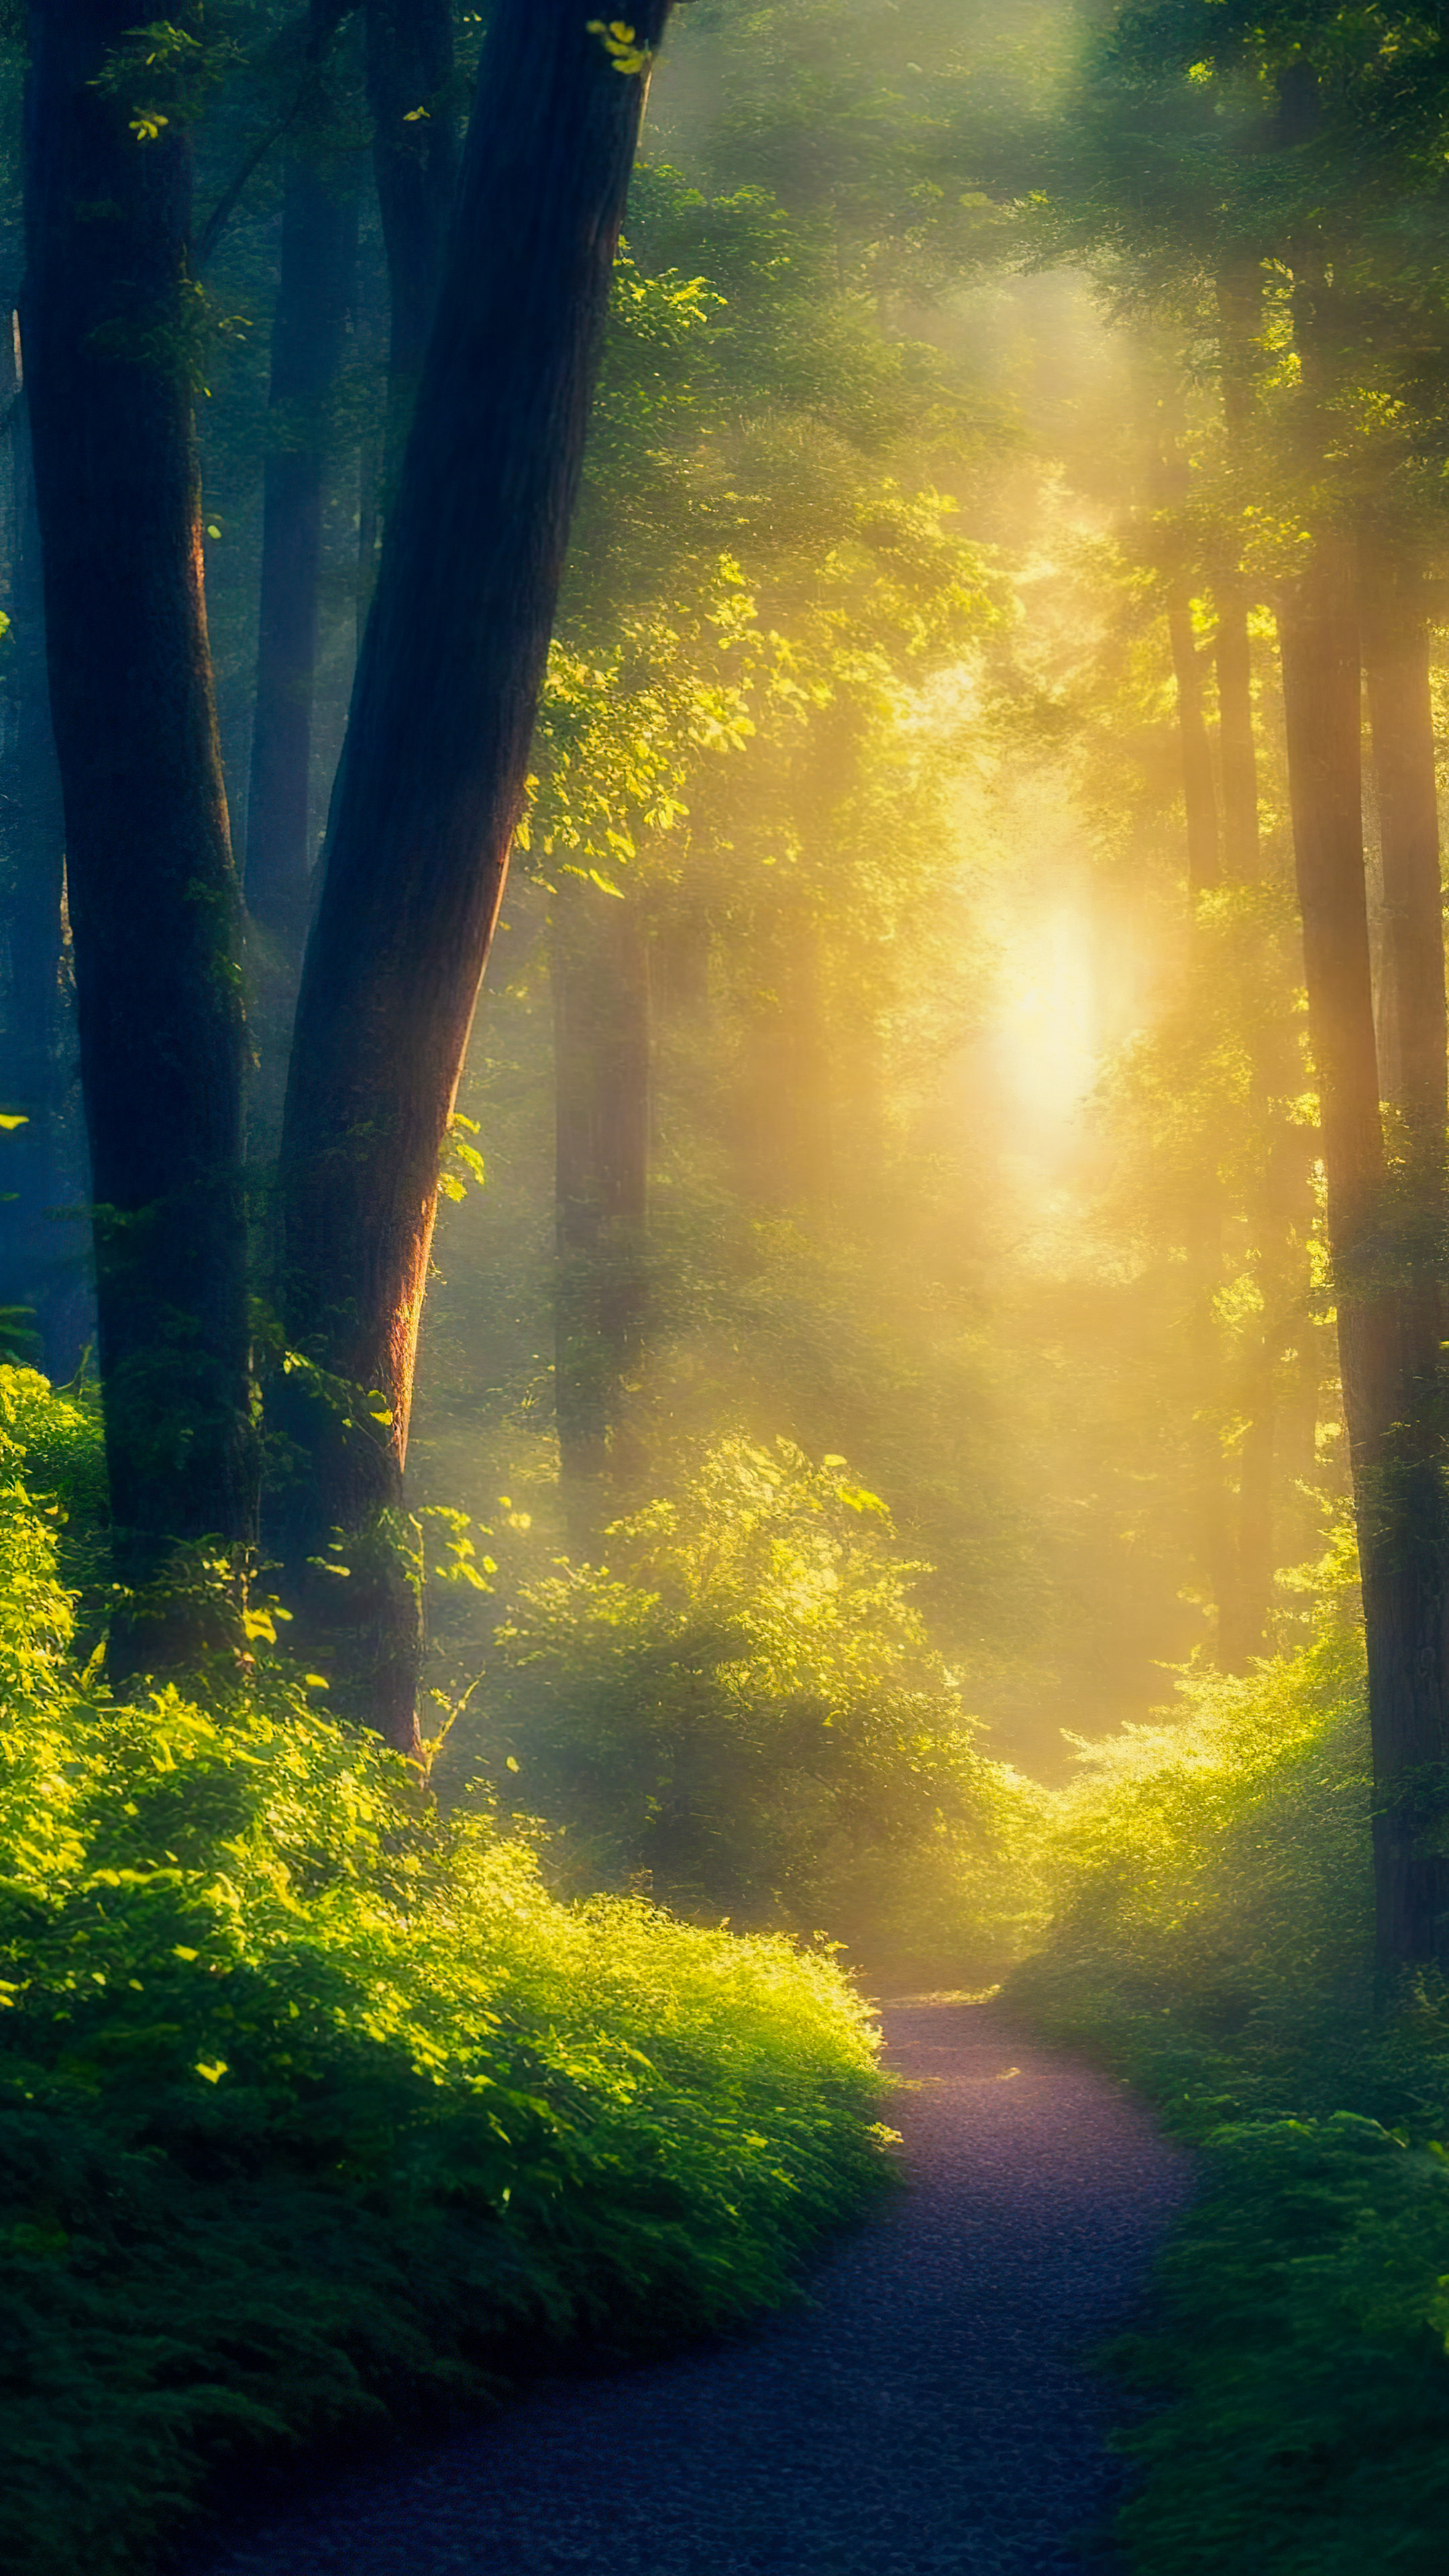 Illuminez votre iPhone avec notre fond d'écran nature en 4K, capturant une forêt magique baignée dans la douce lueur des lucioles lors d'une chaude soirée d'été.